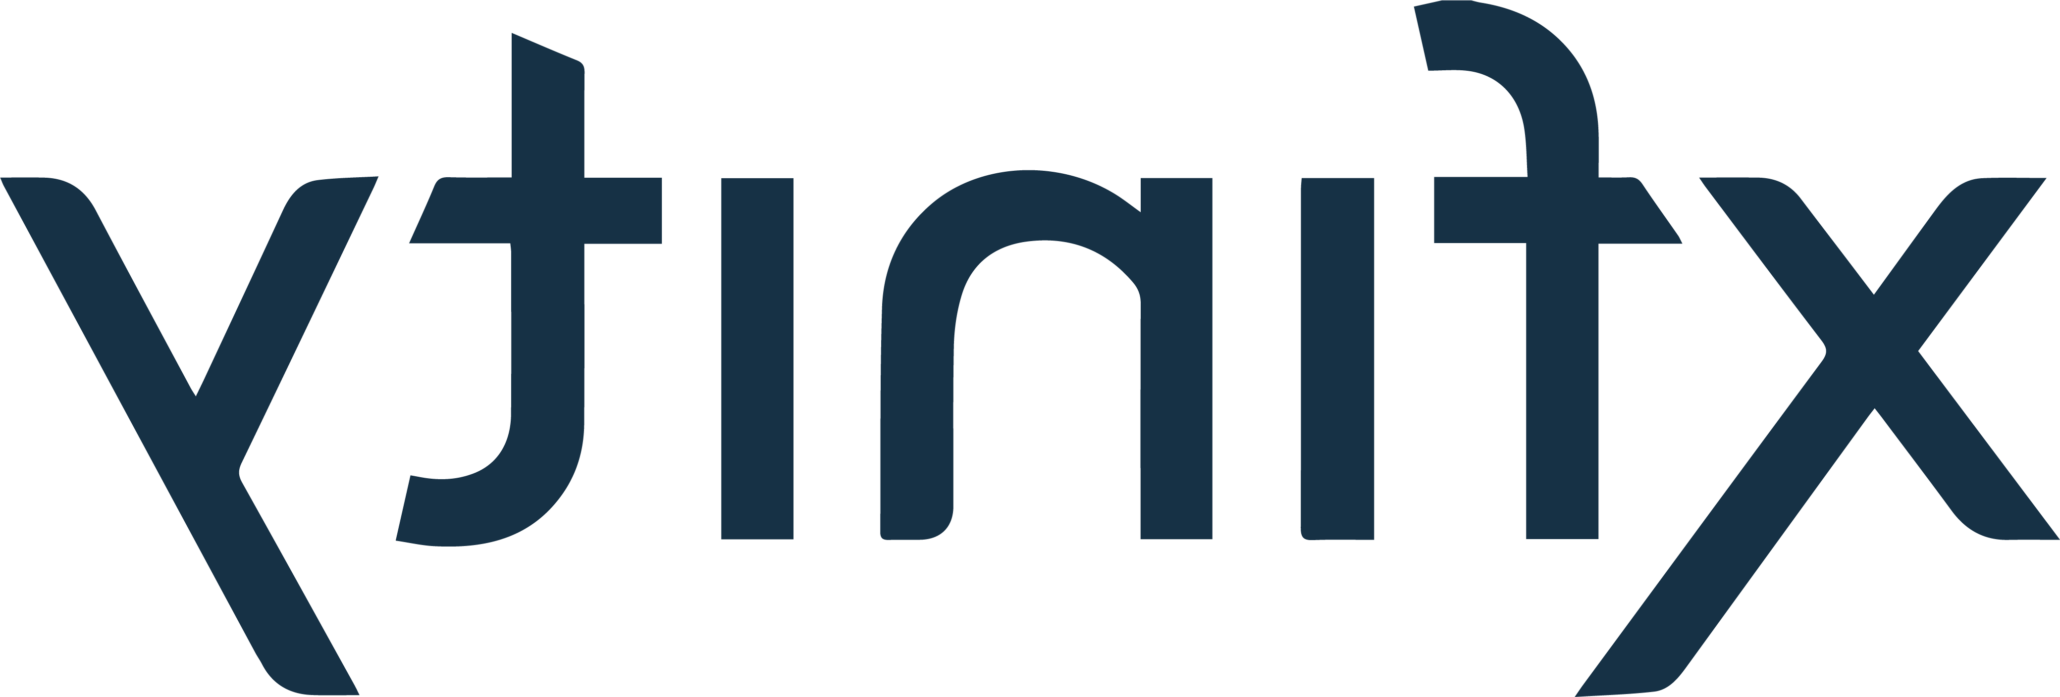 Xfinity client logo